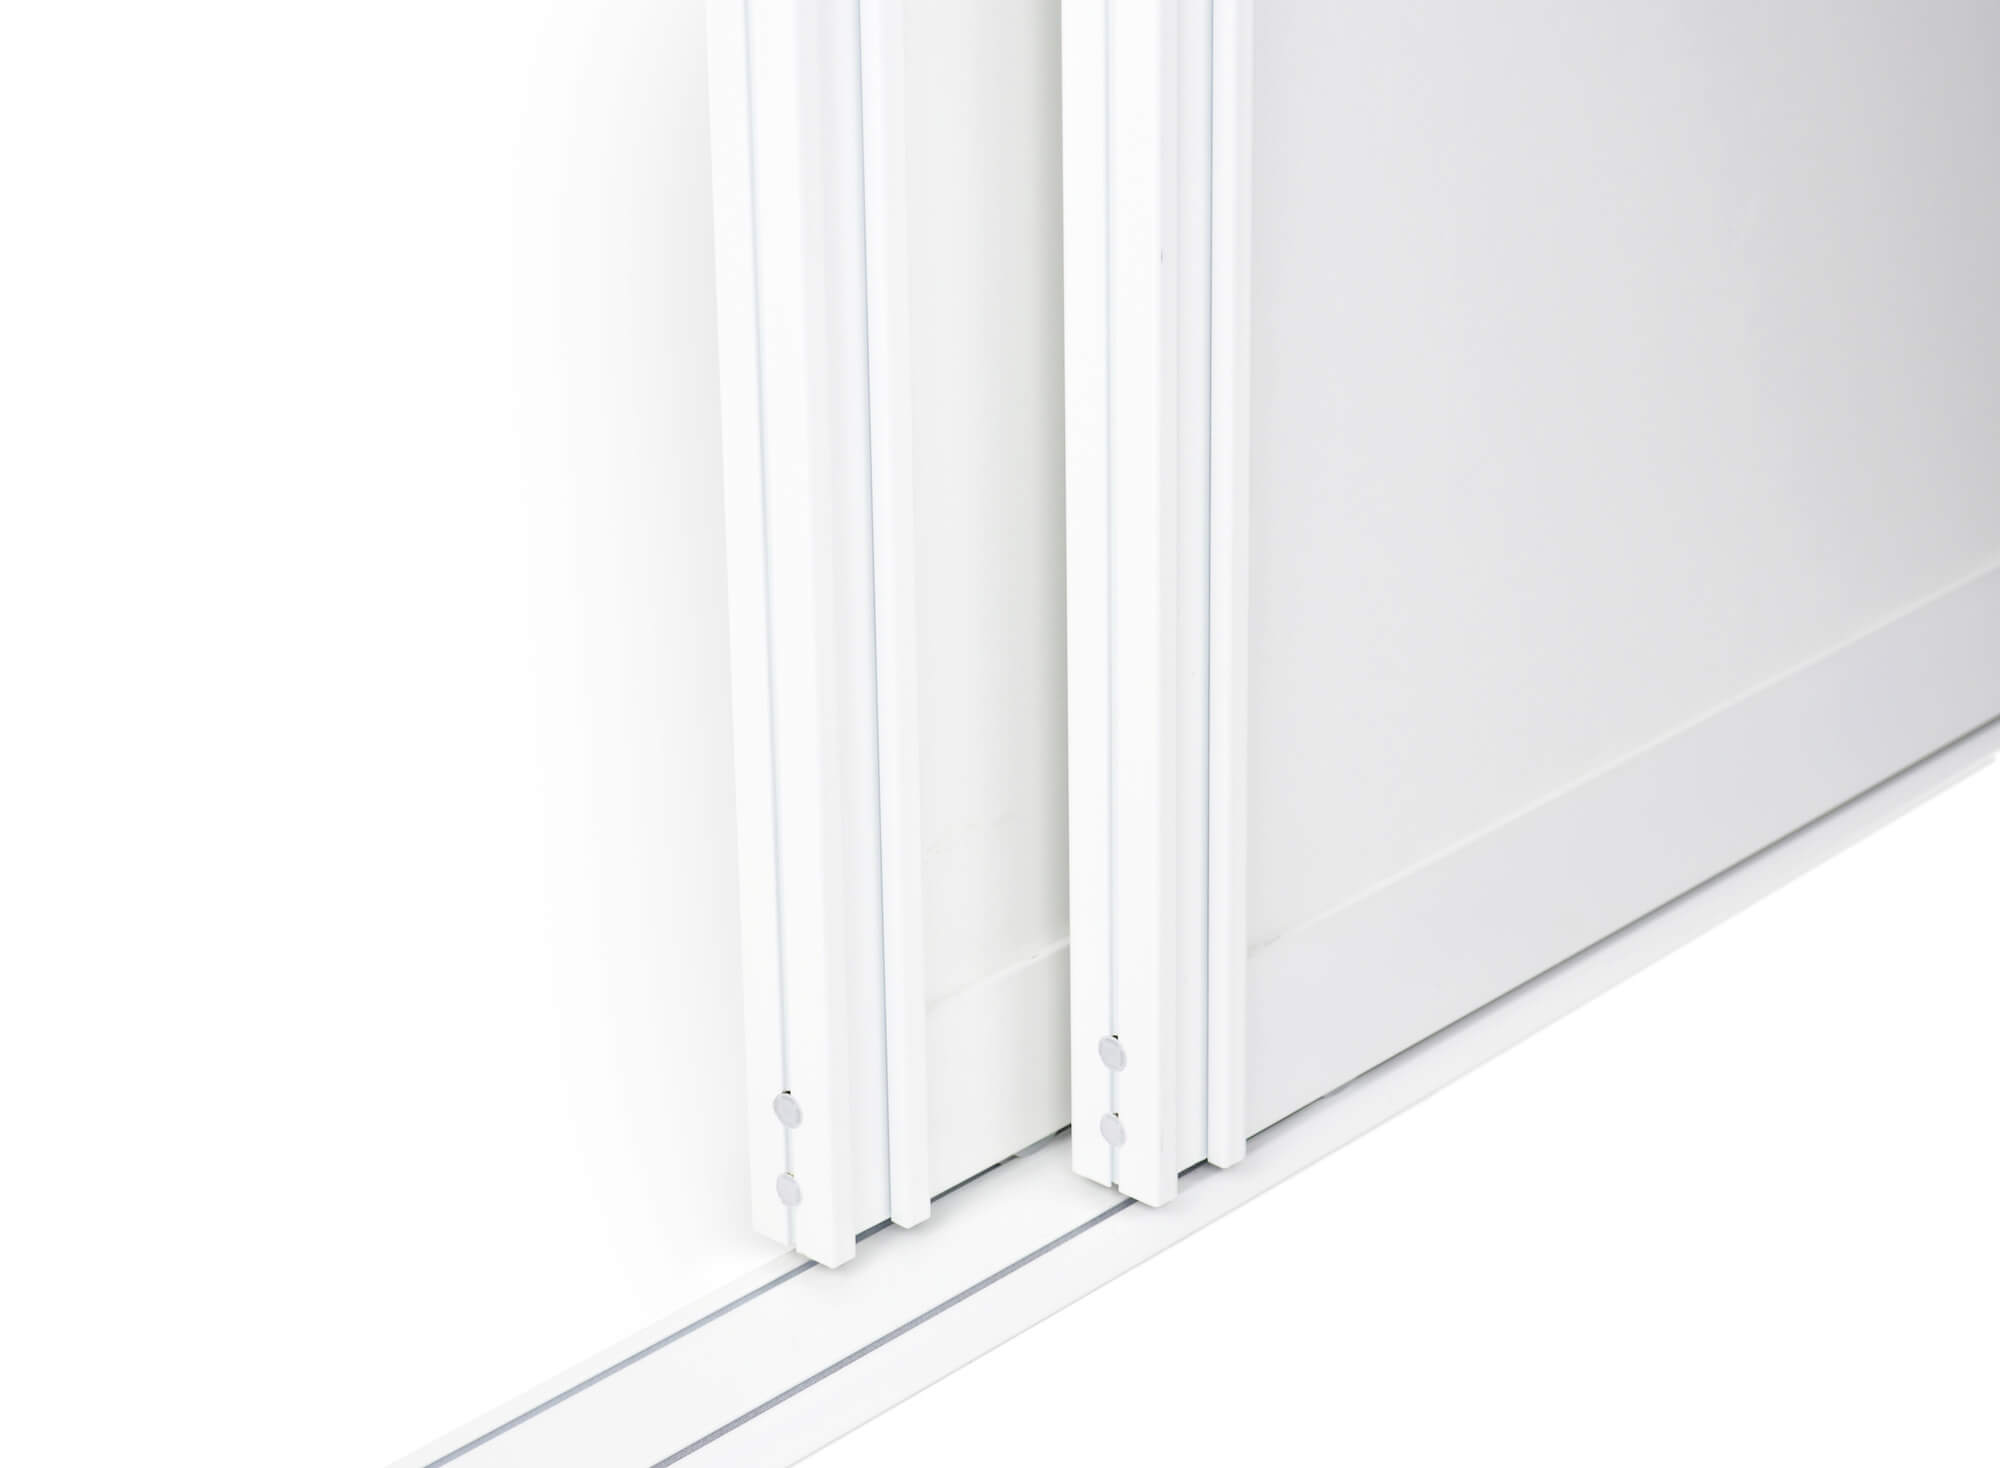 Schiebetür Profil Tosca Weiß Matt lackiert Beispielfoto für Raumteiler, Schranktüren und Durchgangstüren